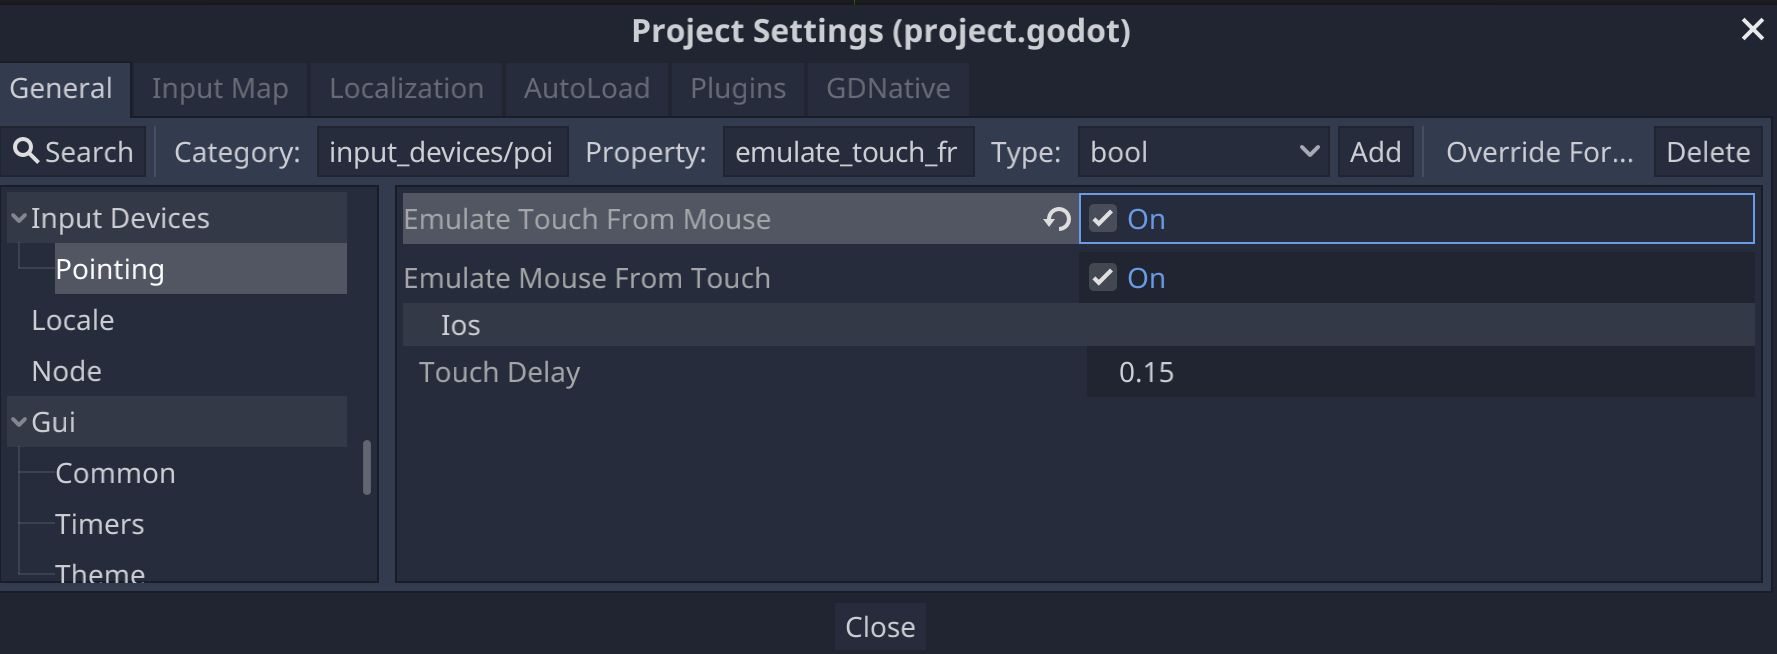 Configurações do projeto Godot para dispositivos de entrada